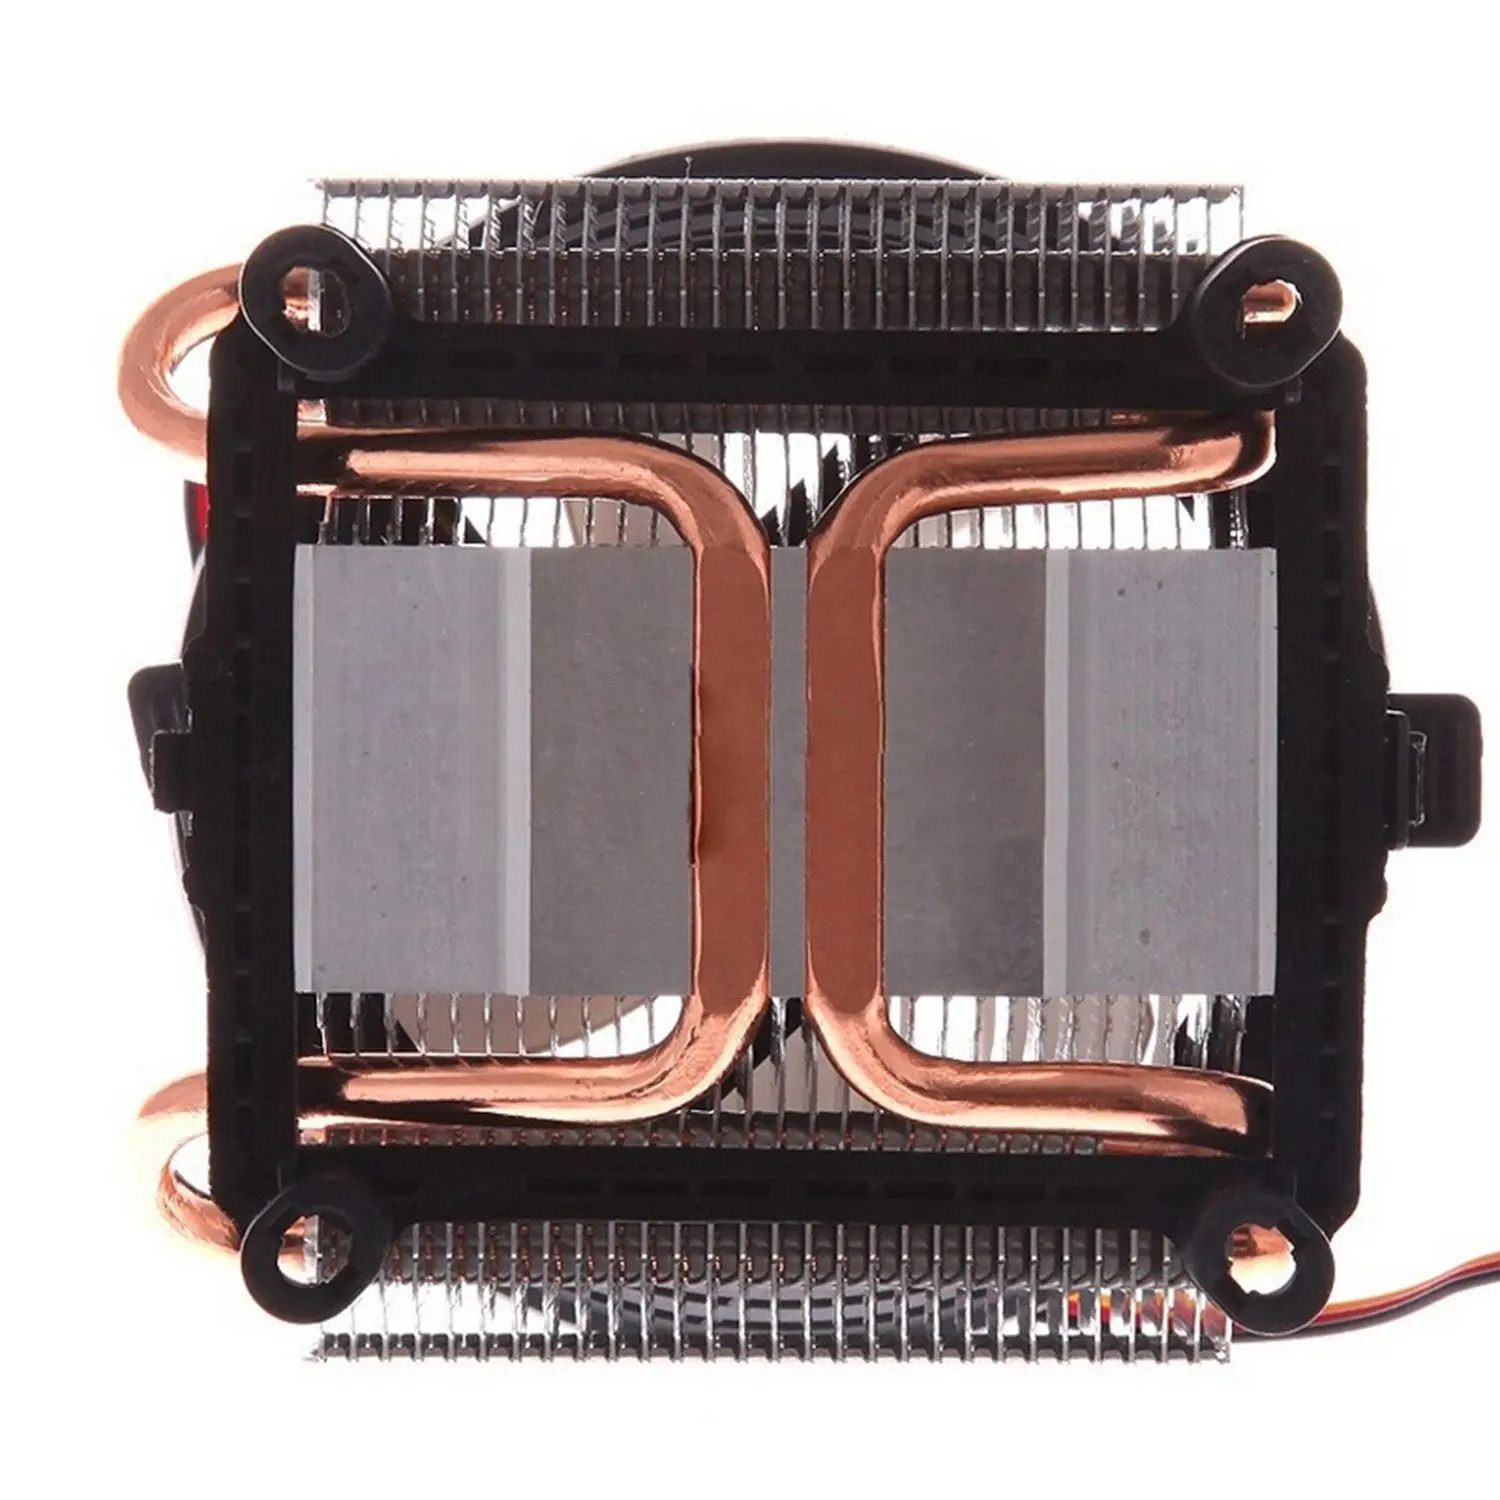 PCCOOLER семь пятен Божья коровка V4 процессор радиатор полный медь 2 тепловая трубка для AMD/intel cpu тихий вентилятор